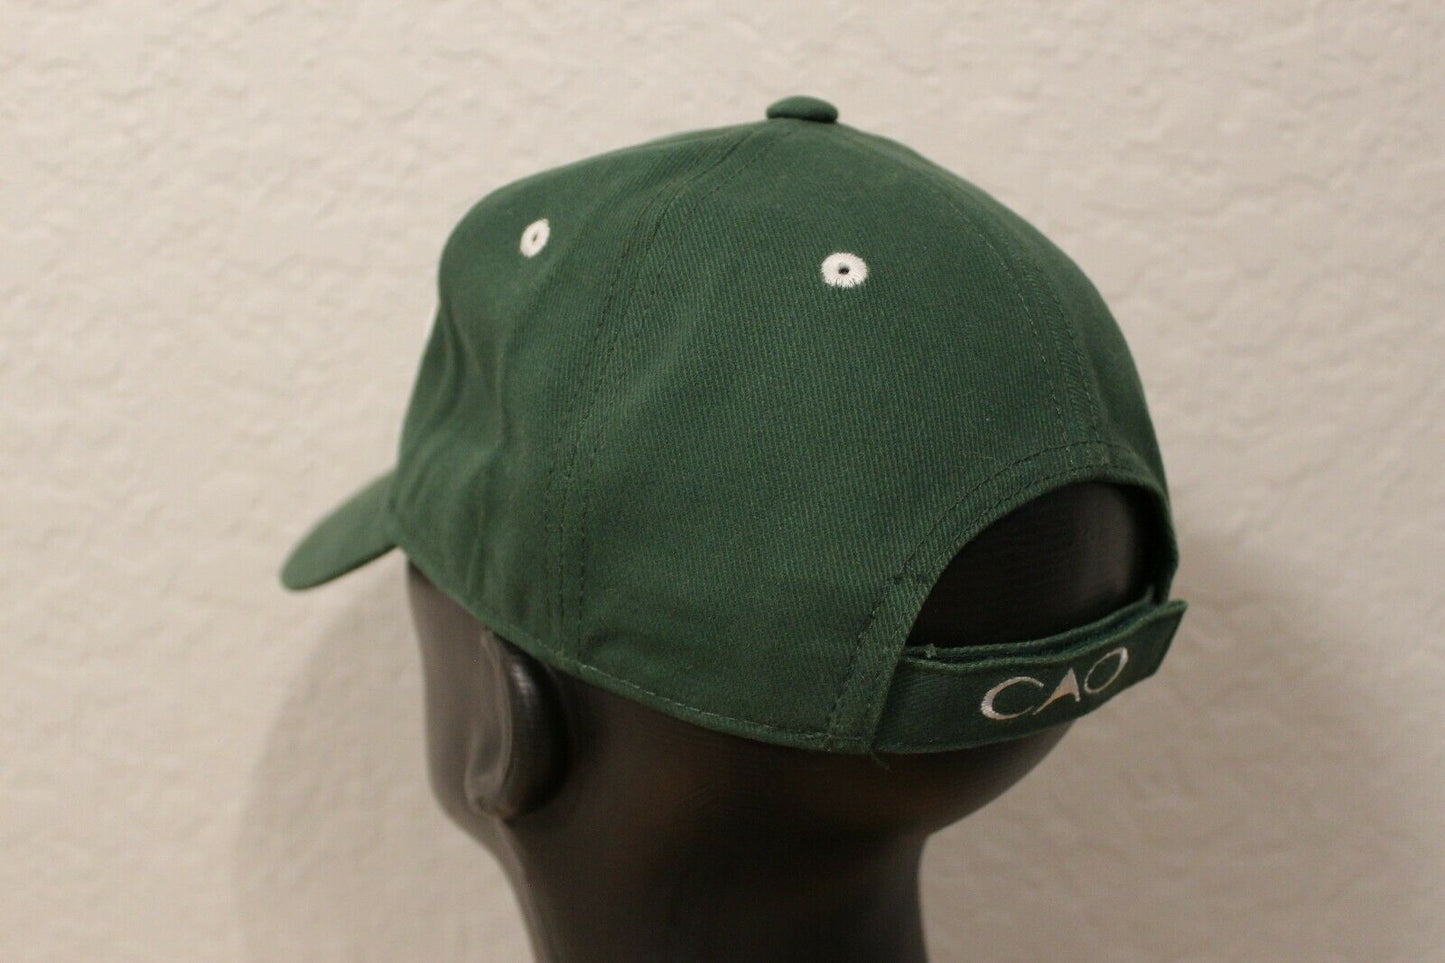 CAO M.E.R.C.H. Hat